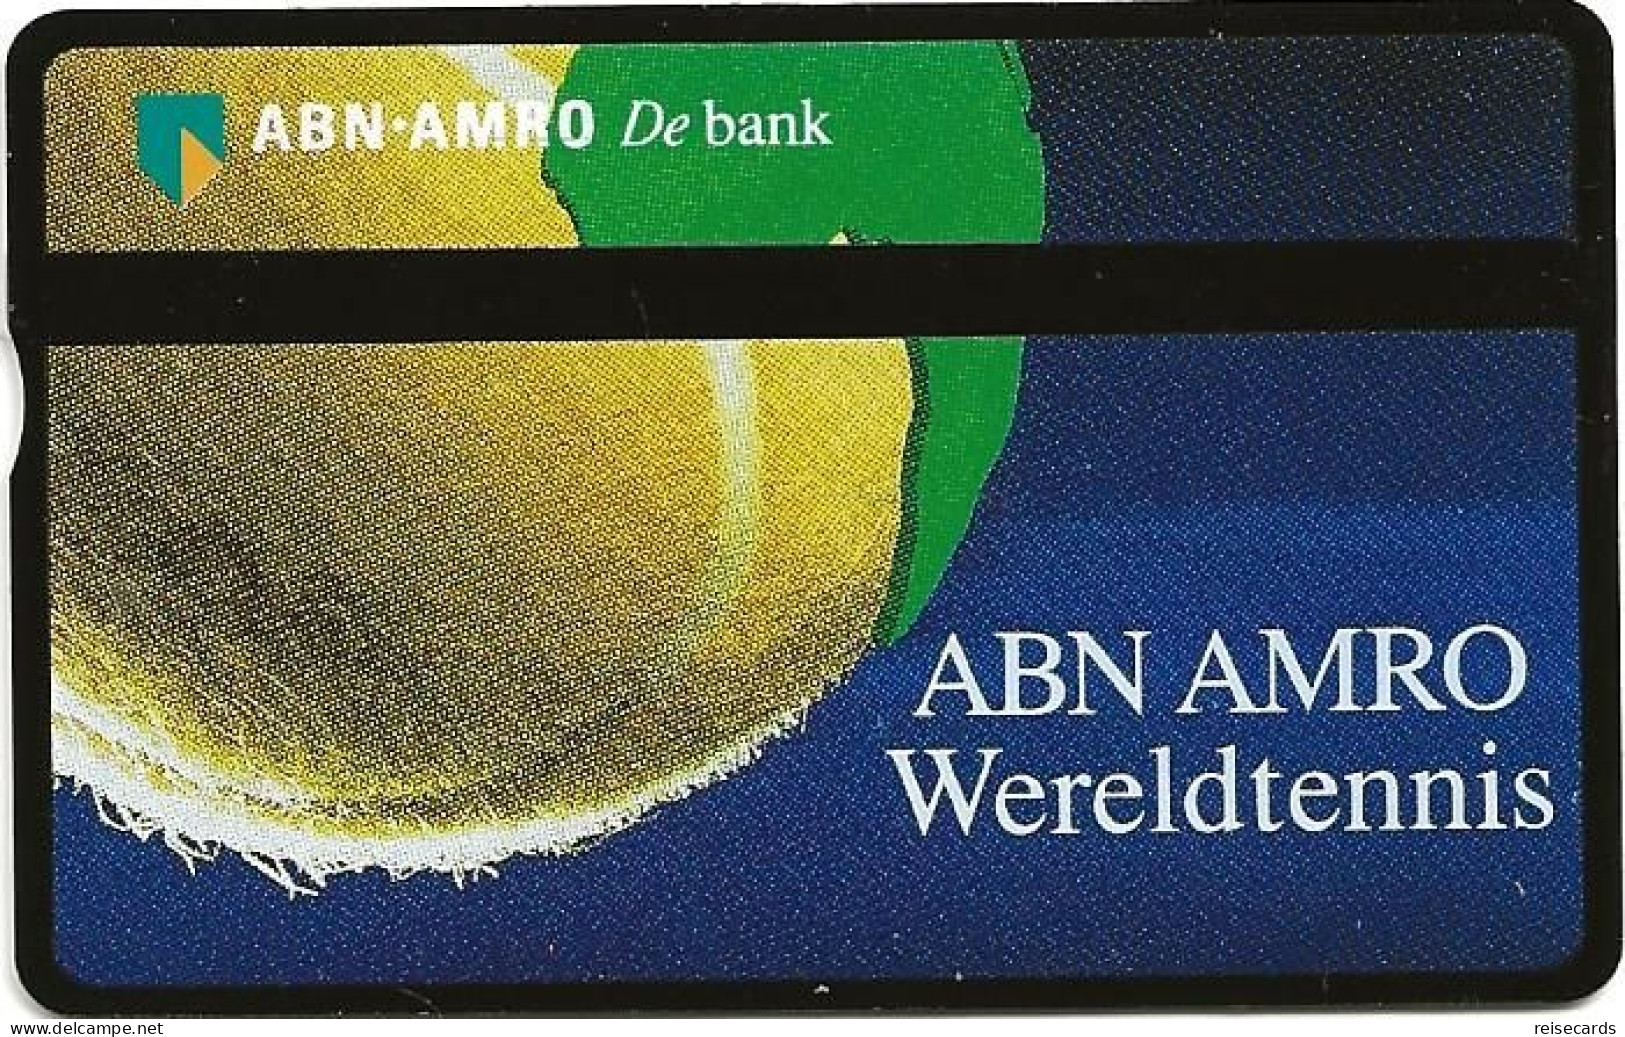 Netherlands: Ptt Telecom - ABN AMRO Bank - Wereldtennis - öffentlich